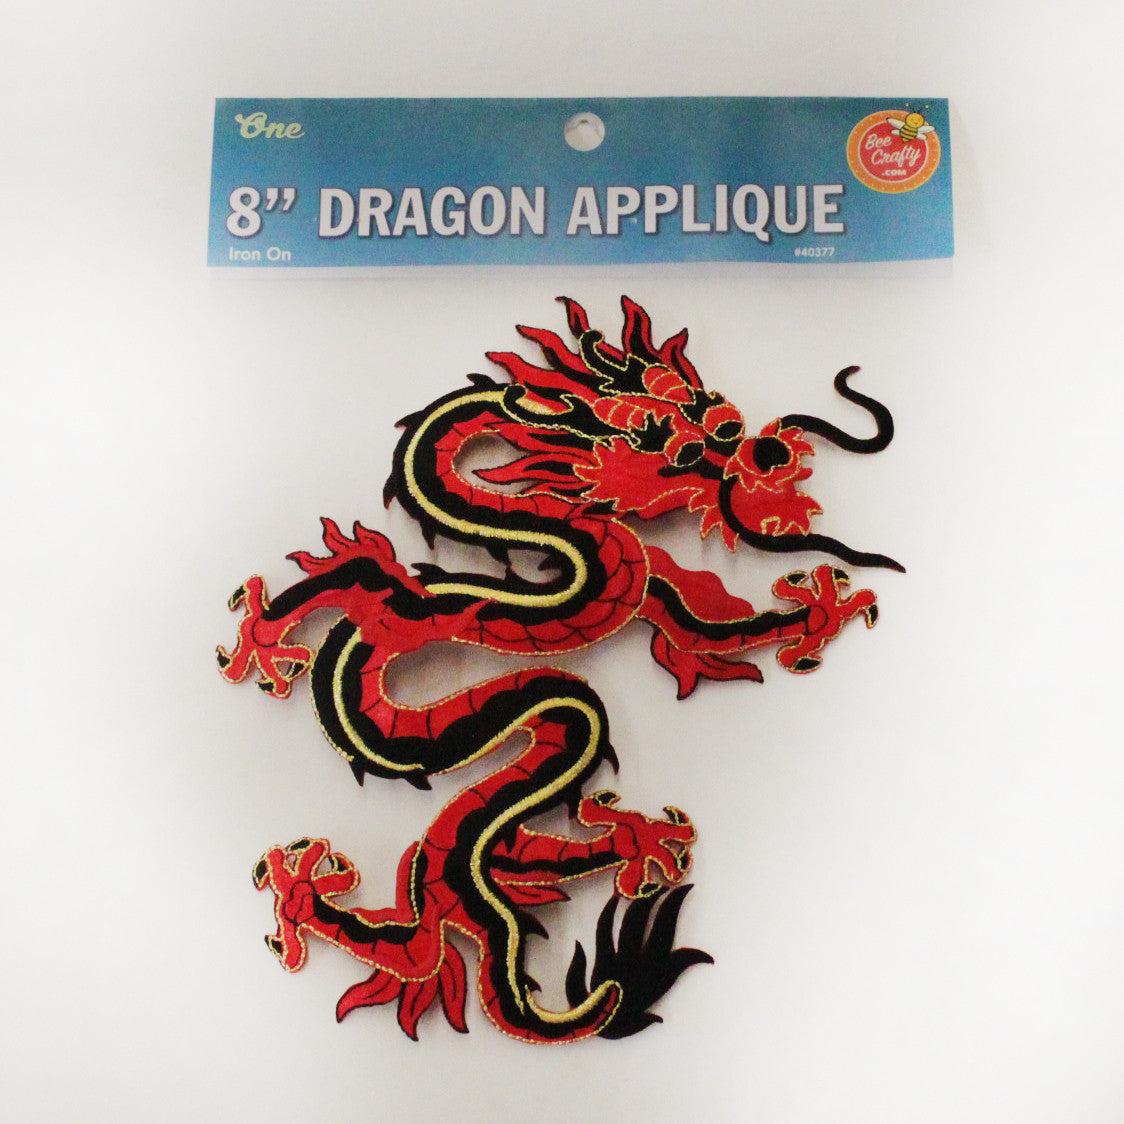 8" Dragon Applique